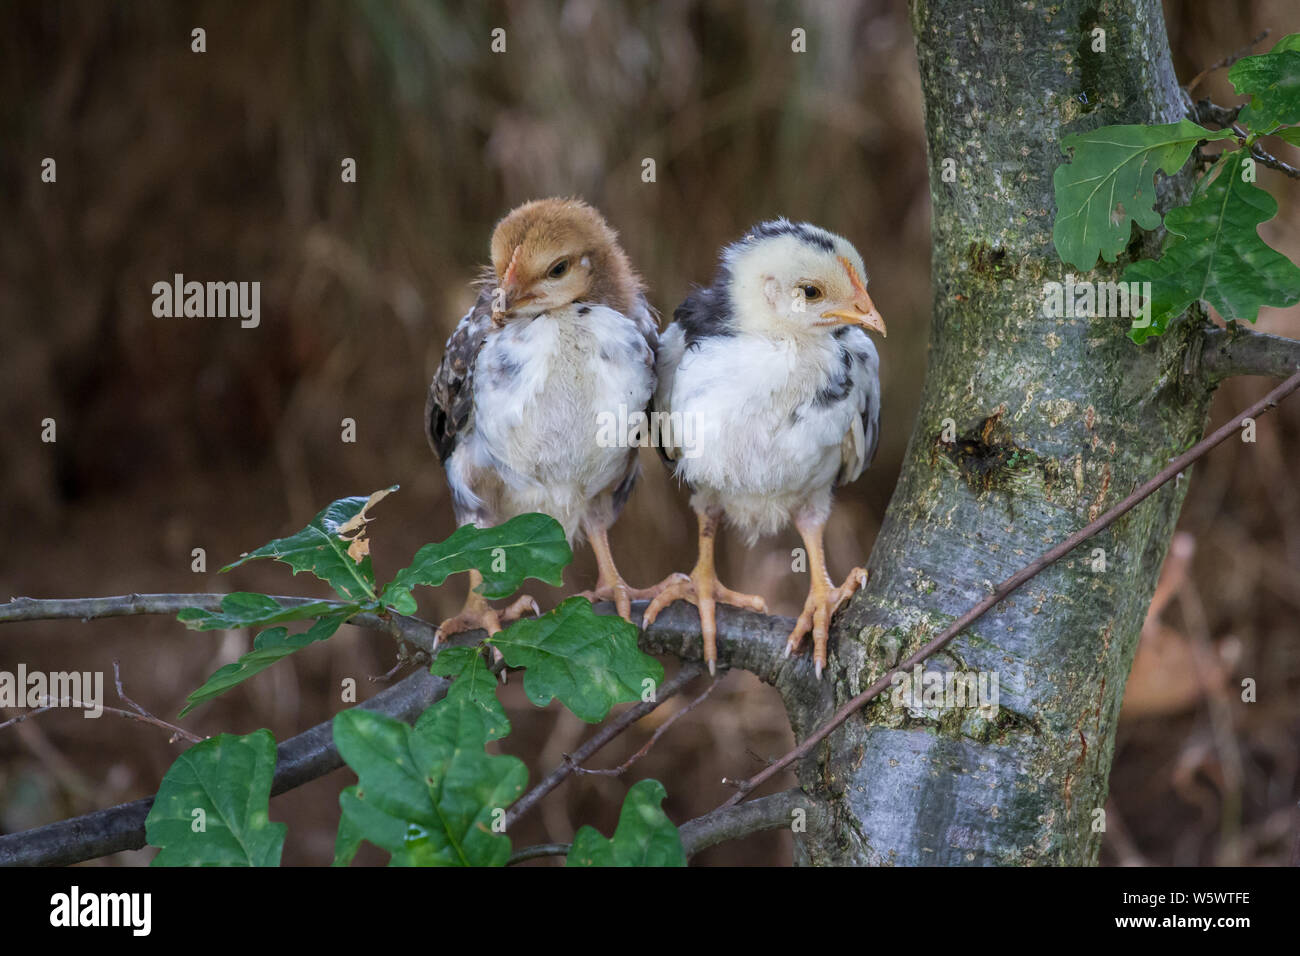 Steinhendl/Stoapiperl flügge Sitzen auf dem Baum, einer vom Aussterben bedrohten Rasse Huhn aus Österreich Stockfoto